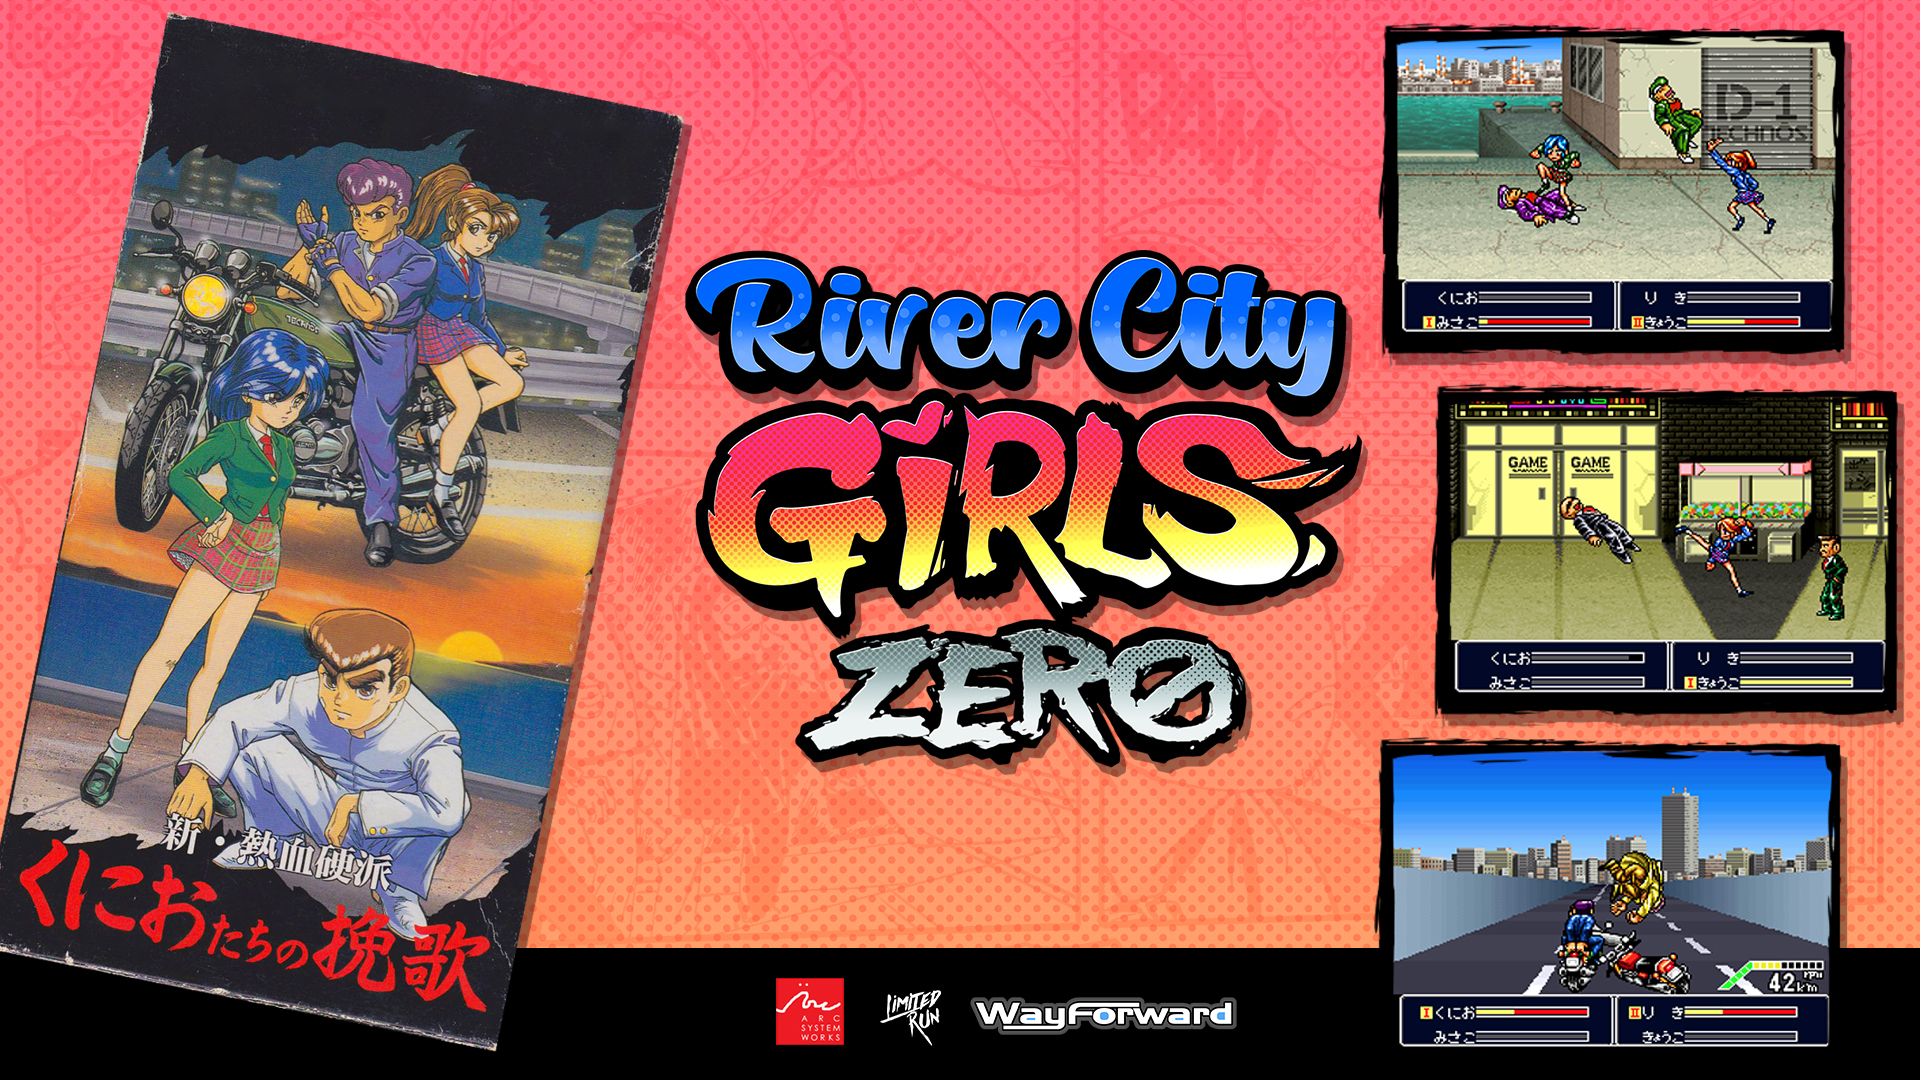 熱血硬派國夫君 系列外傳新作 熱血少女2 正式發表預定22 年推出 River City Girls 2 巴哈姆特